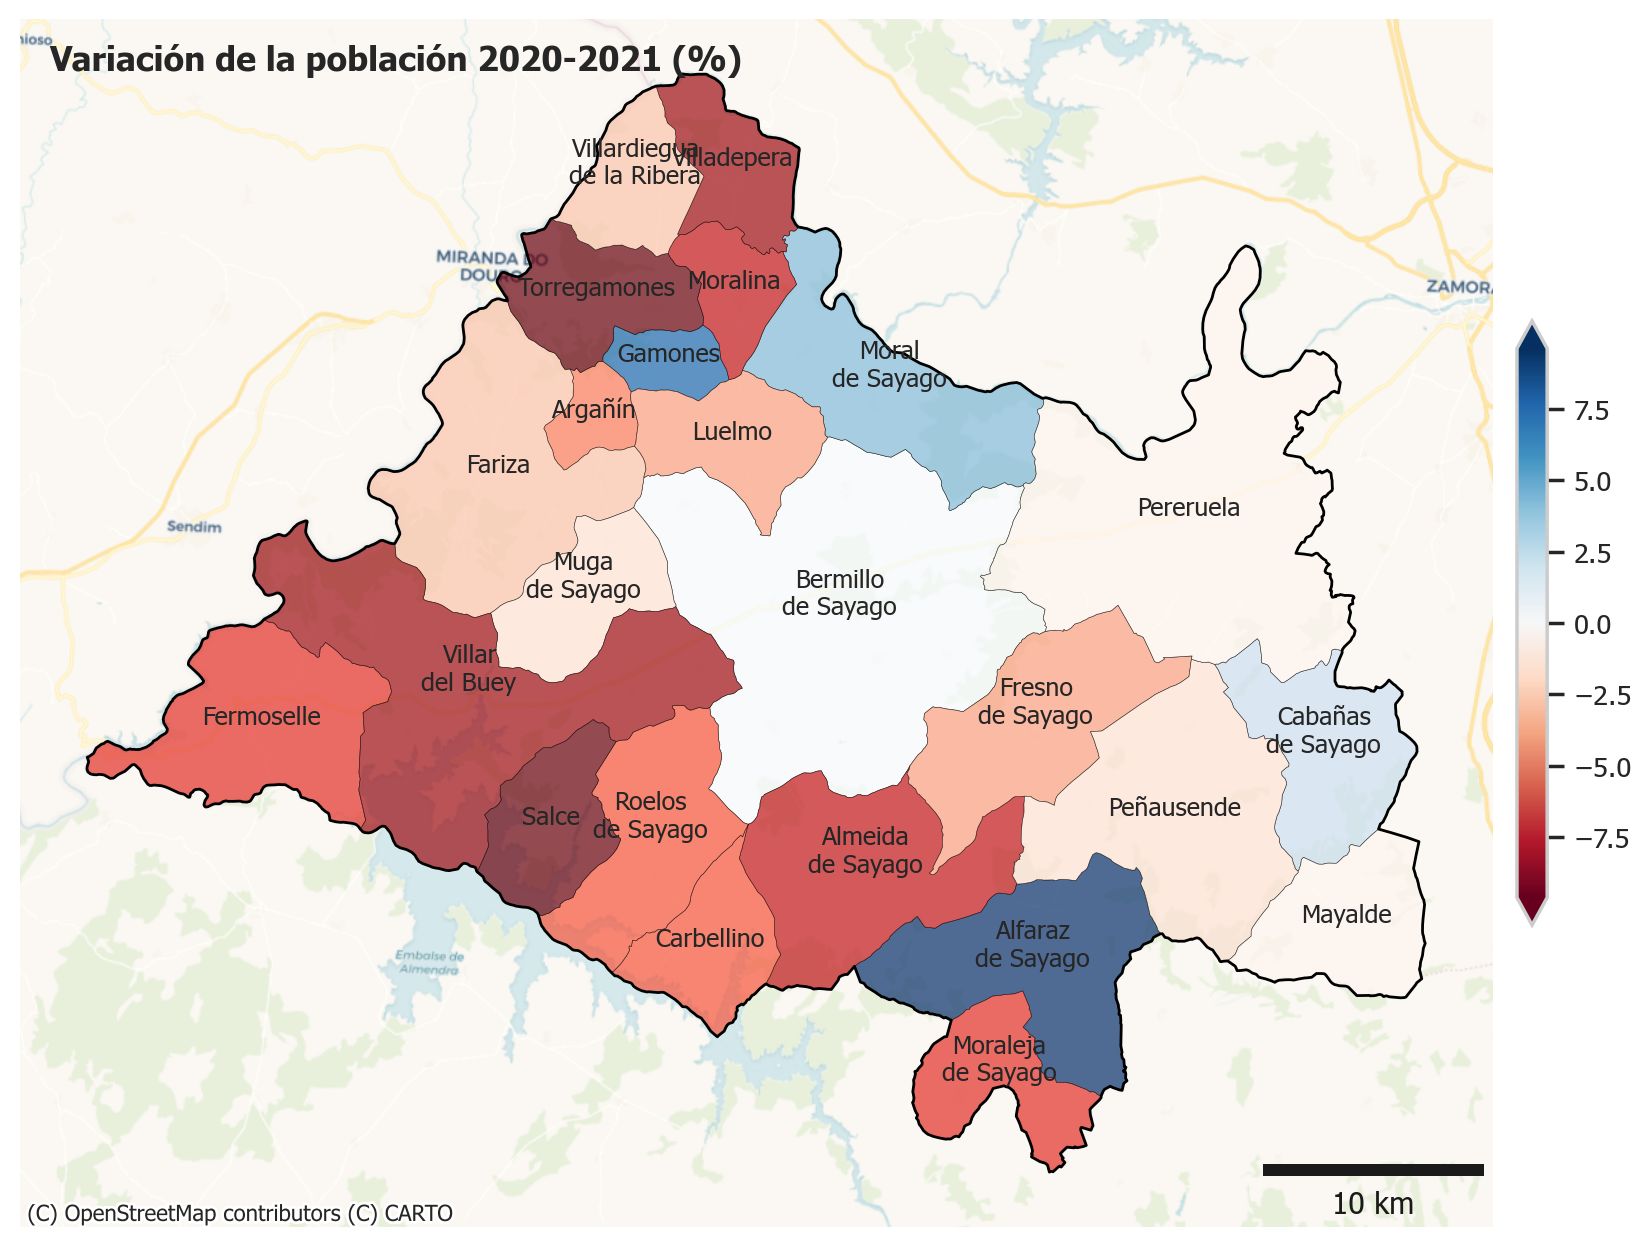 Mapa de Sayago con la variación de población entre 2020 y 2021